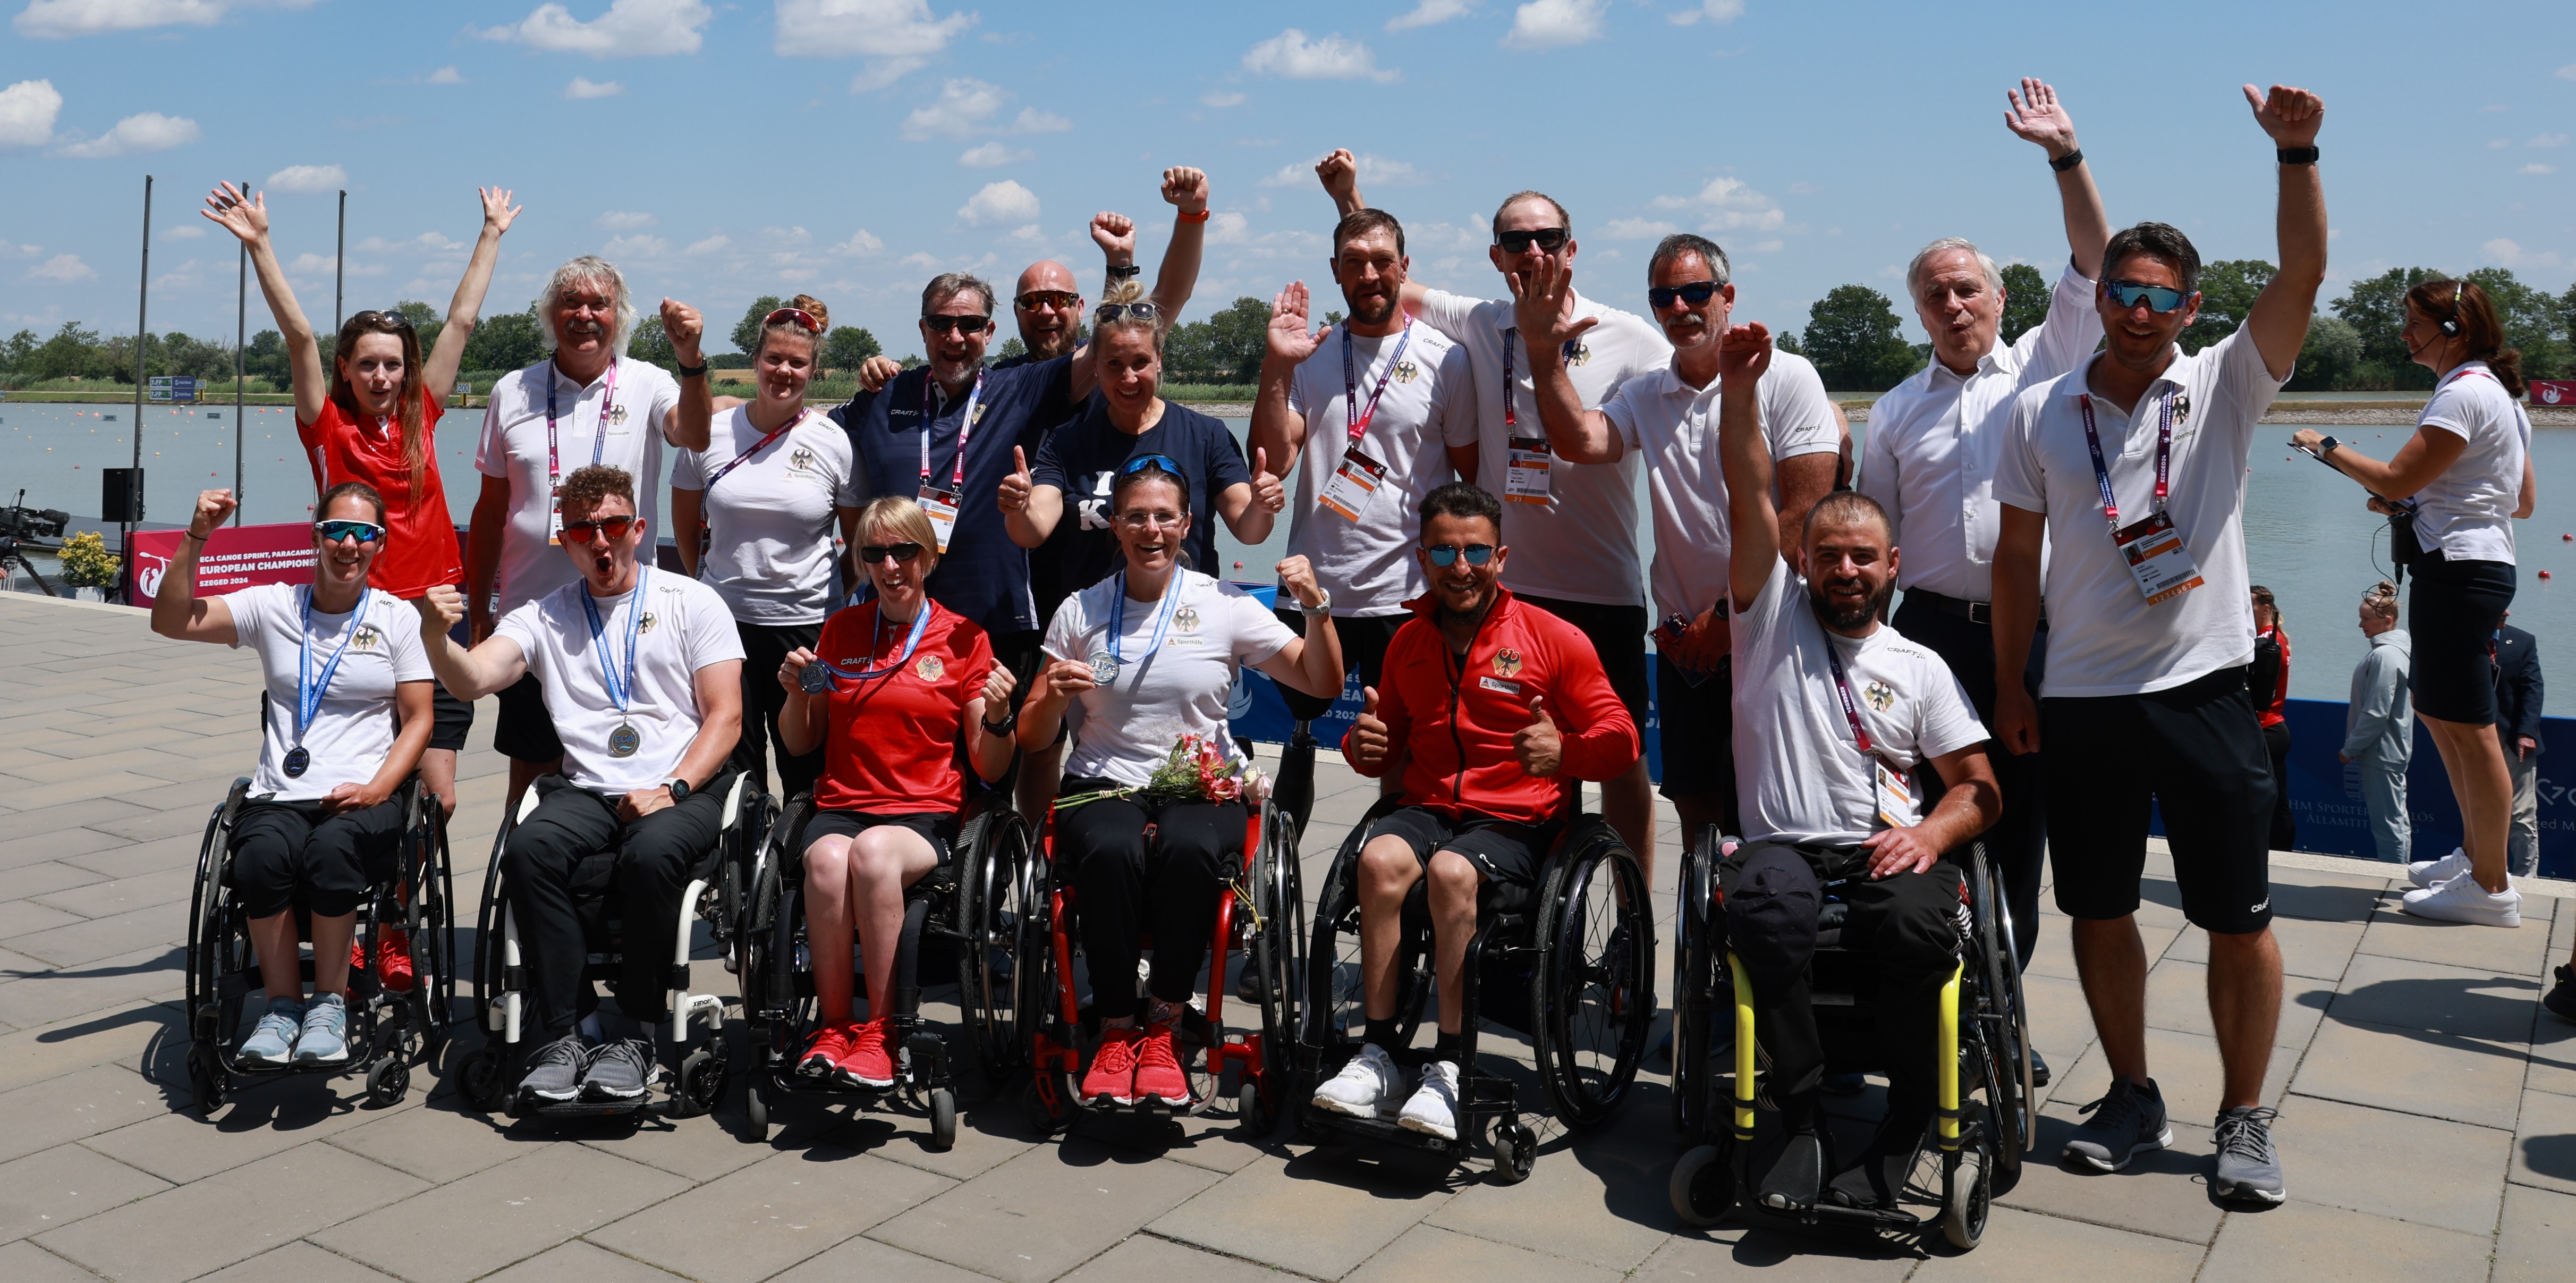 Gruppenbild des ganzen Teams (Rollstuhlfahrende vorn, stehende hinten) mit fröhlichen Gesichtern bei Sonne am Pier.